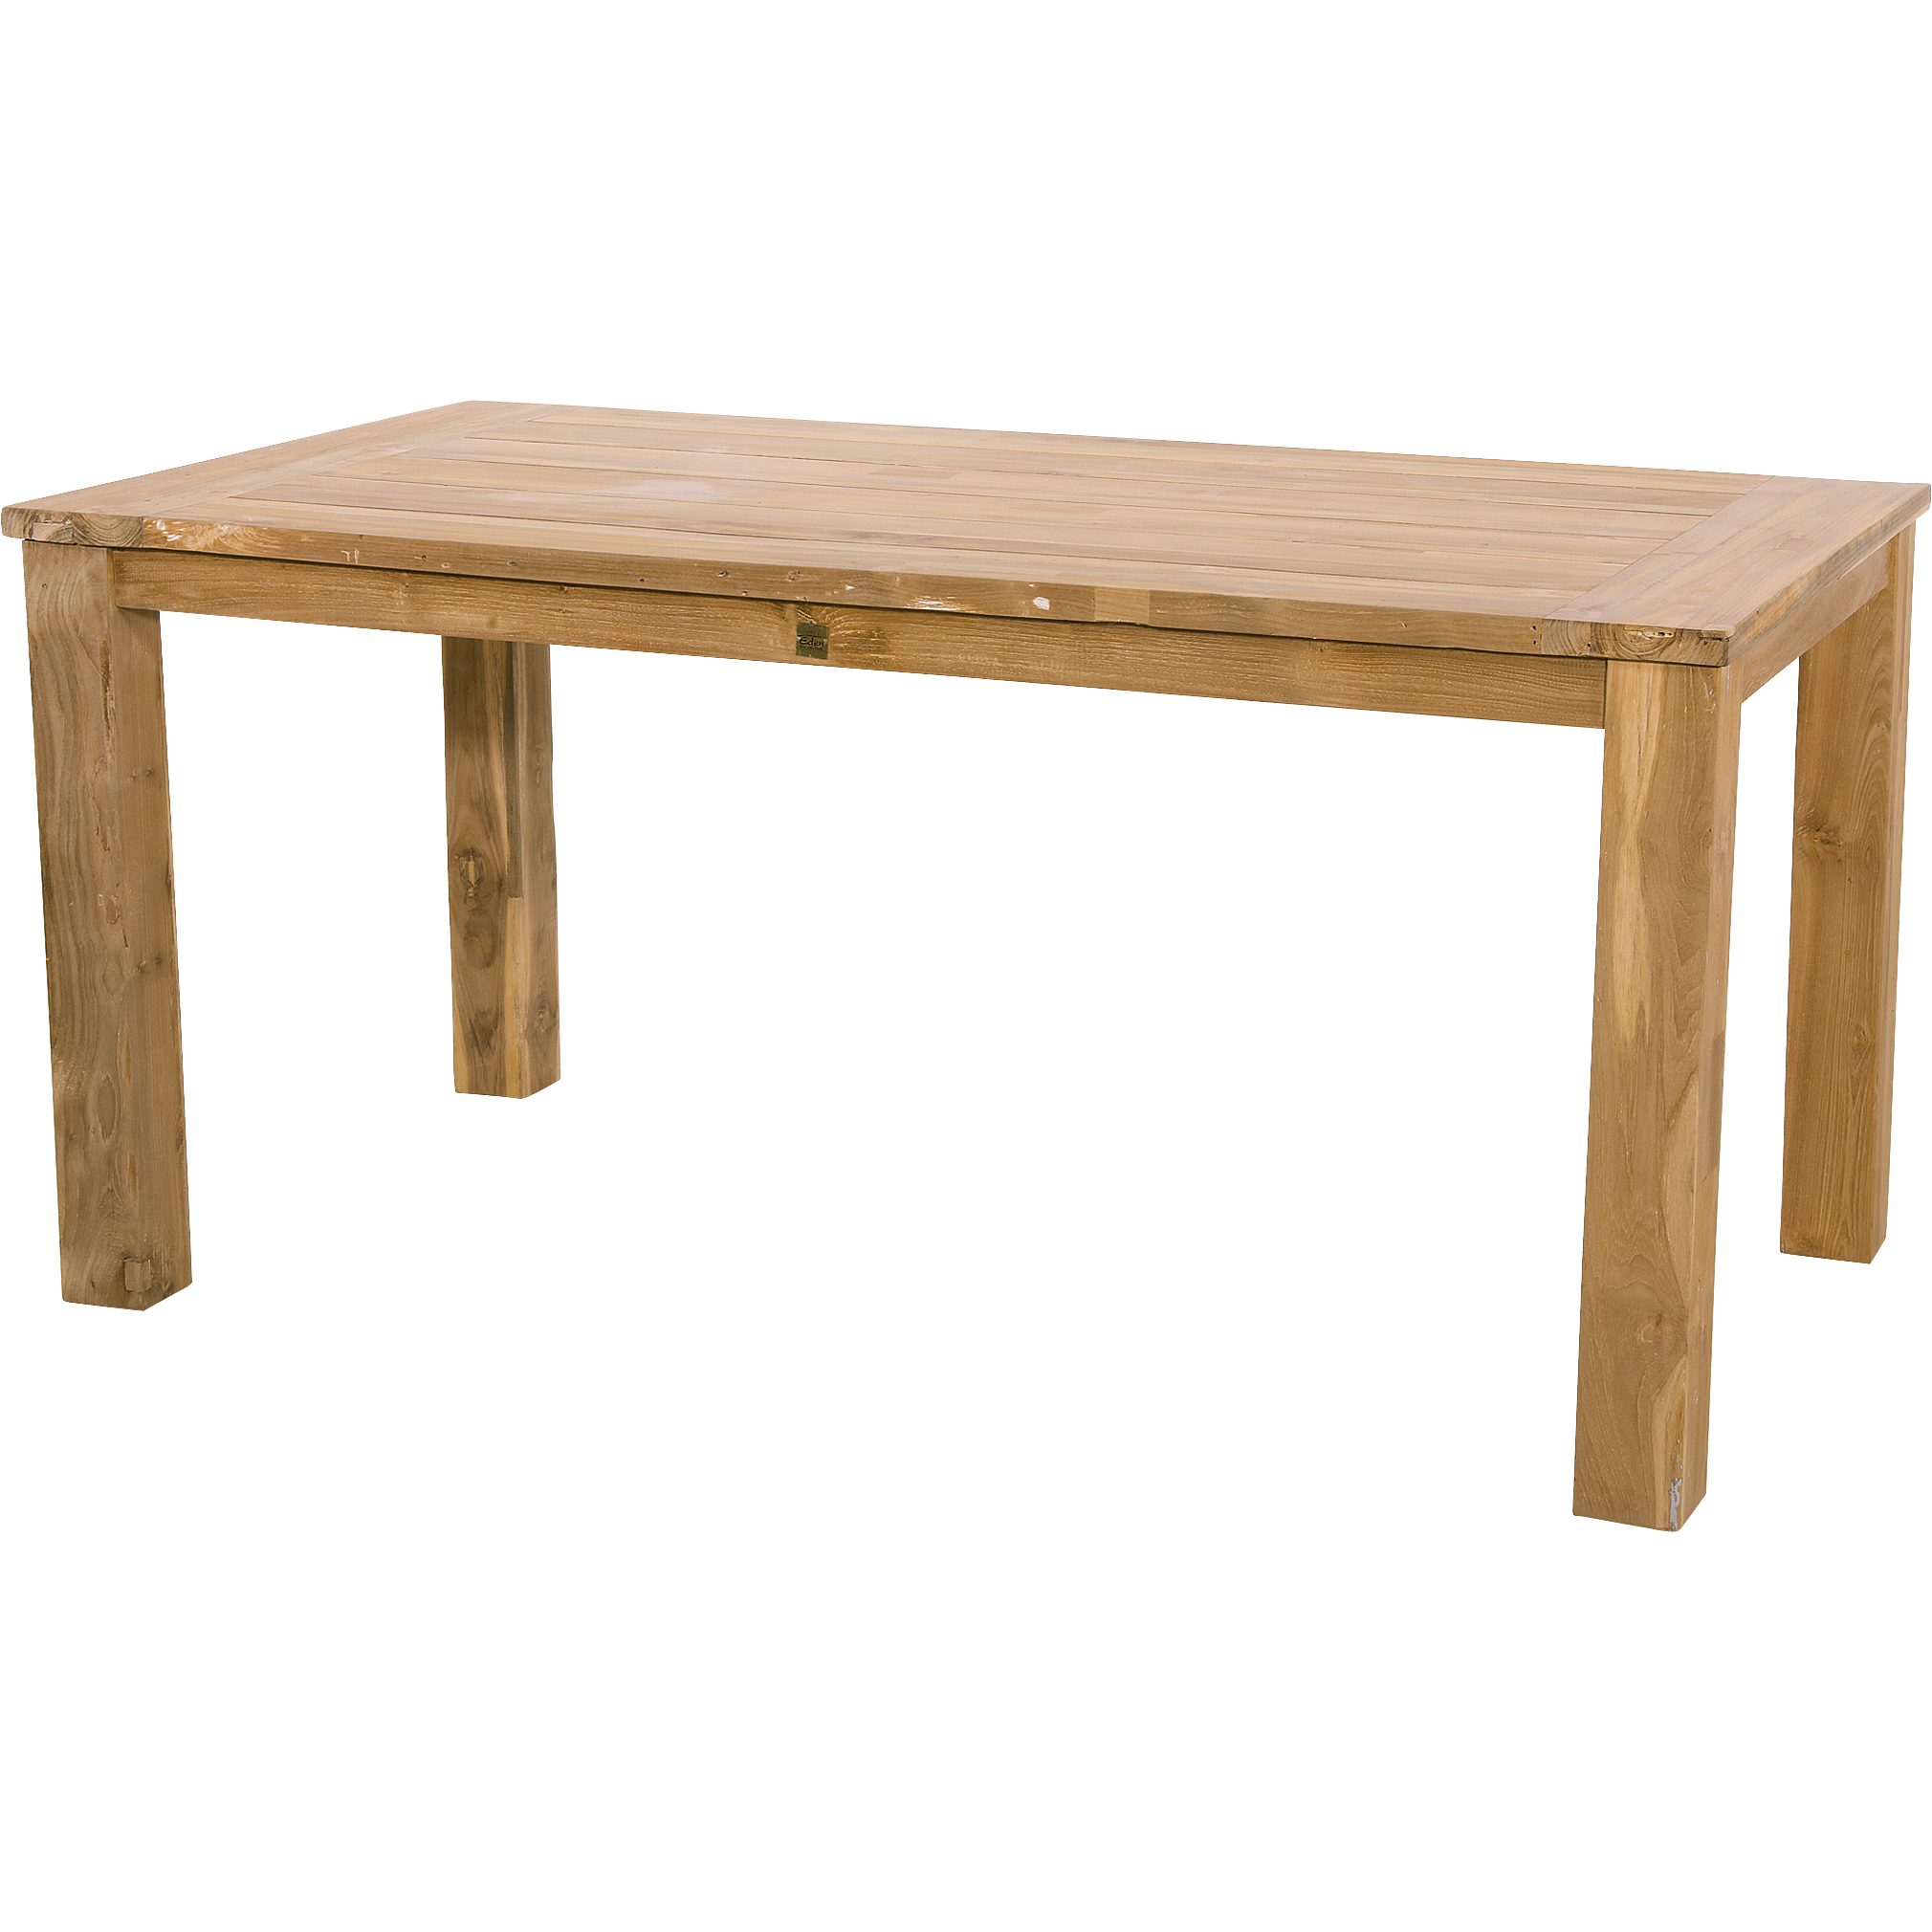 Gartentisch Teak 180x90cm Living Holz recycled Gartentisch Tisch Lesli